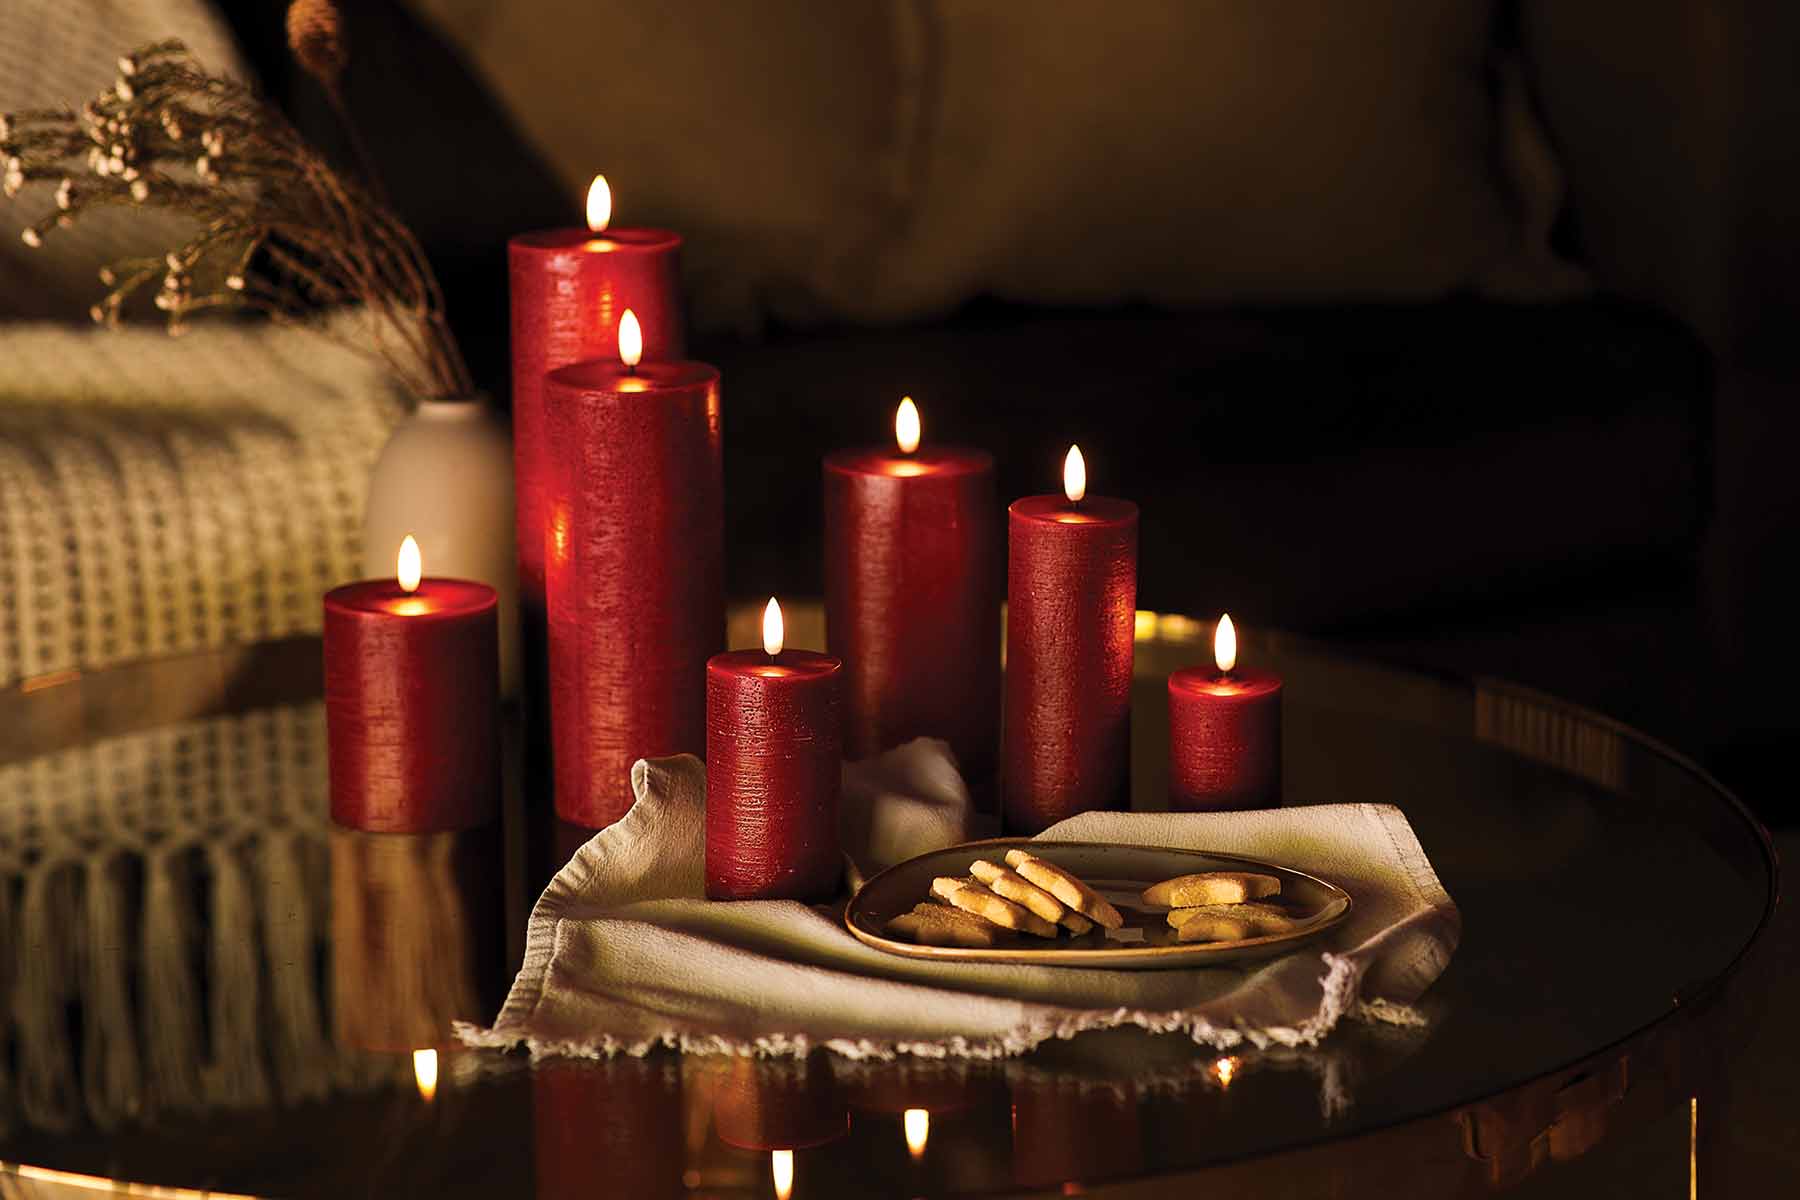 Uyuni LED Christmas candles